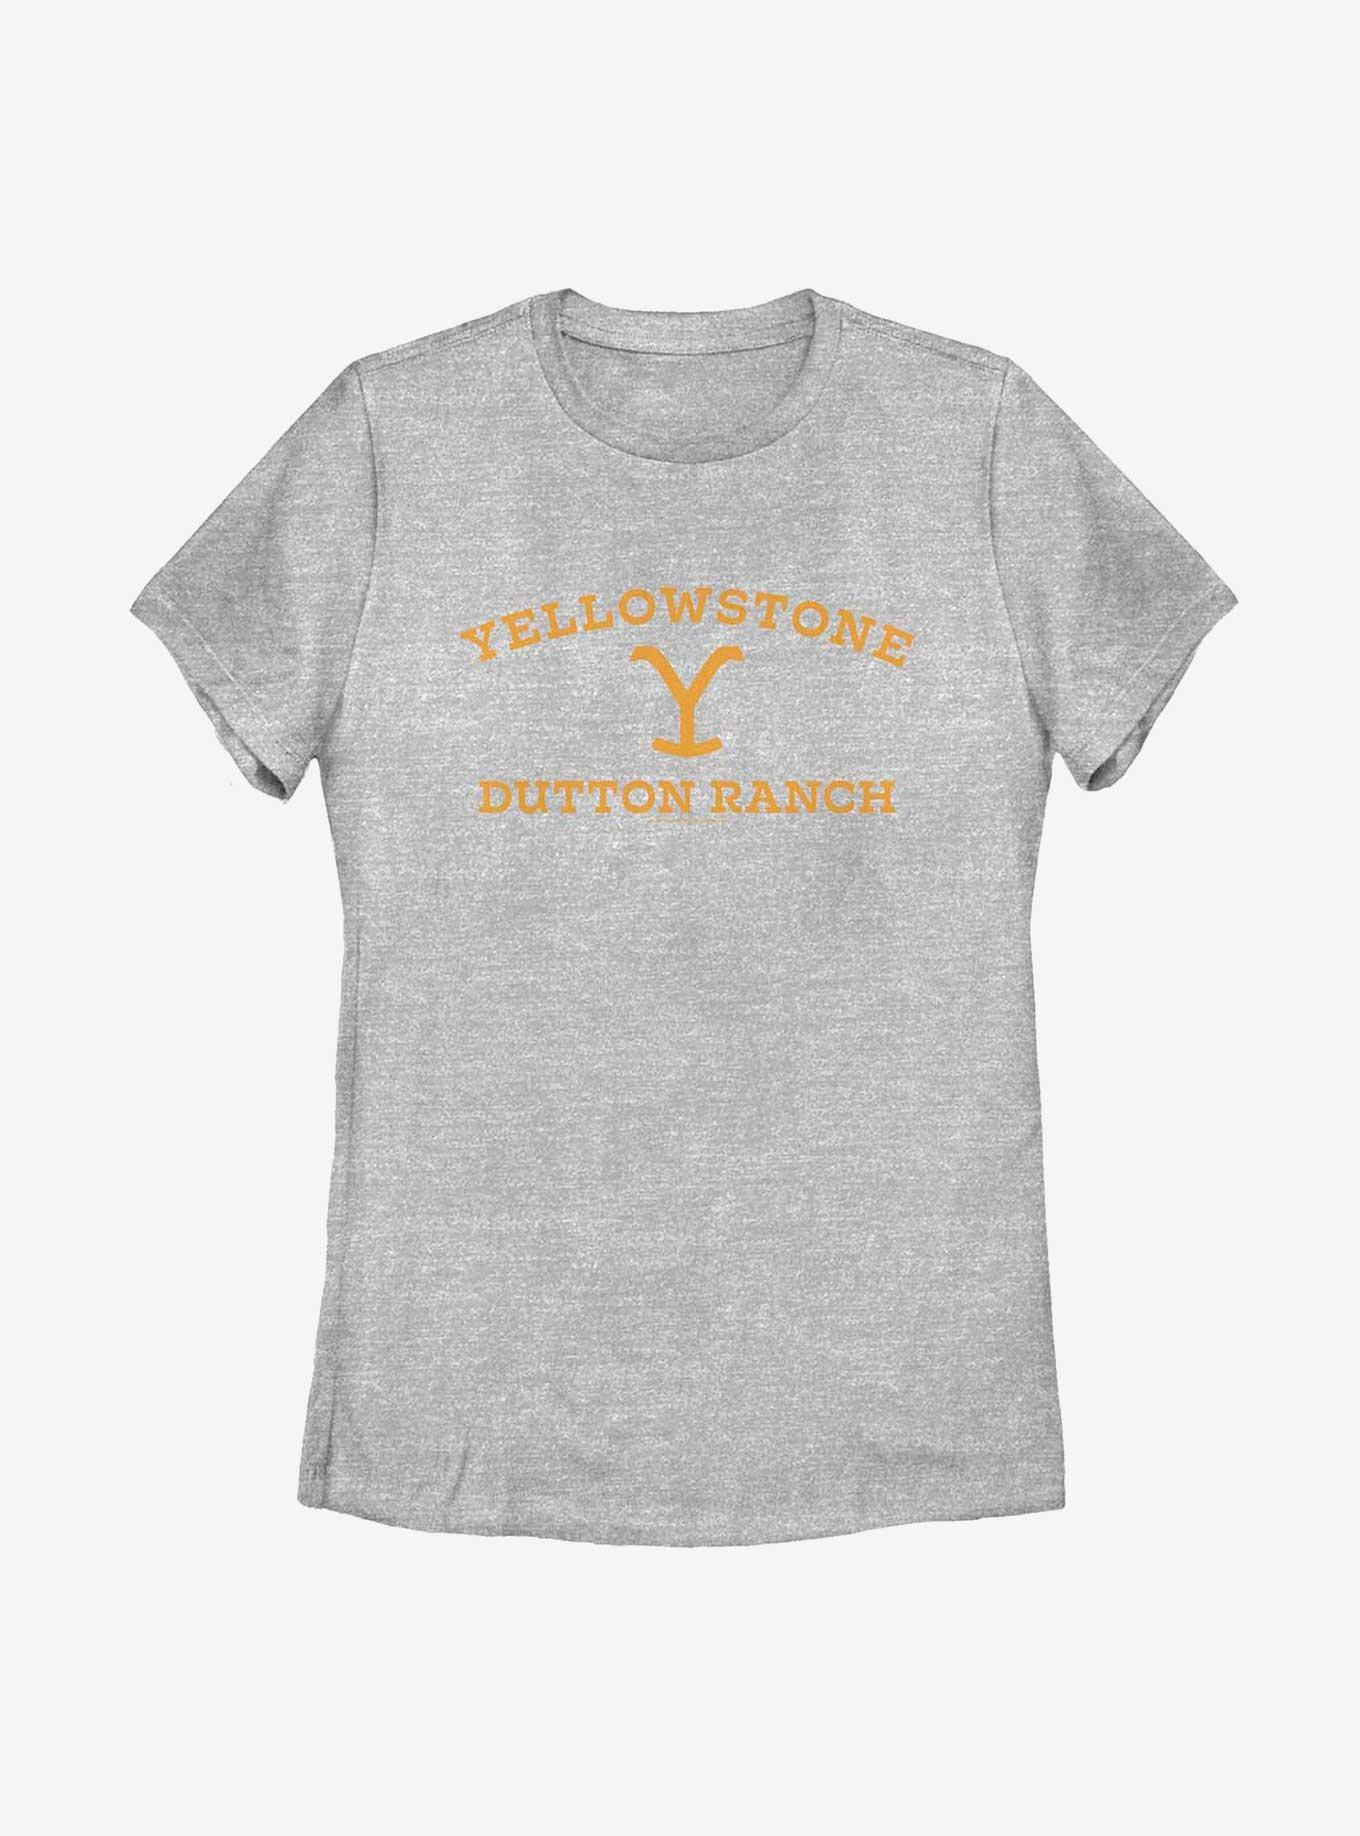 Yellowstone Dutton Ranch Logo Womens T-Shirt, ATH HTR, hi-res